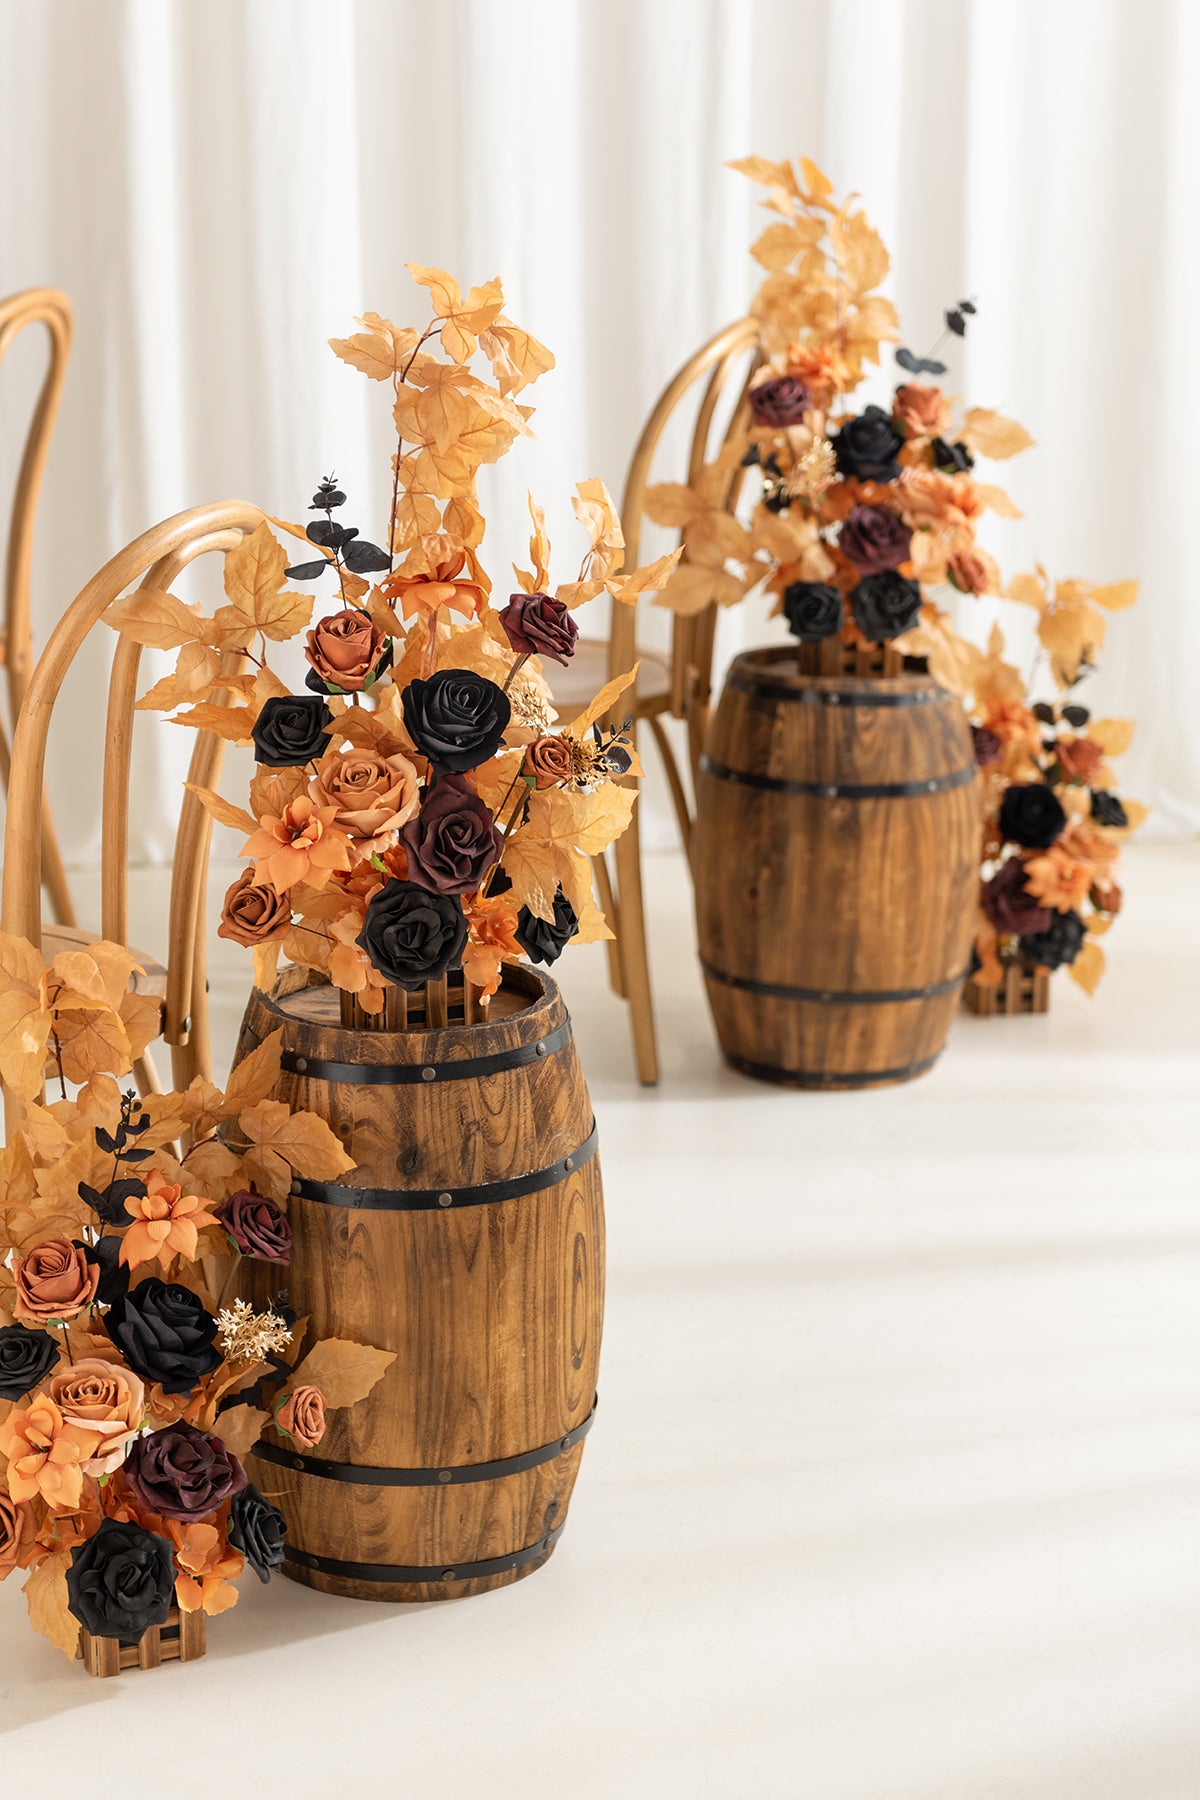 Wedding Aisle Runner Flower Arrangement in Black & Pumpkin Orange